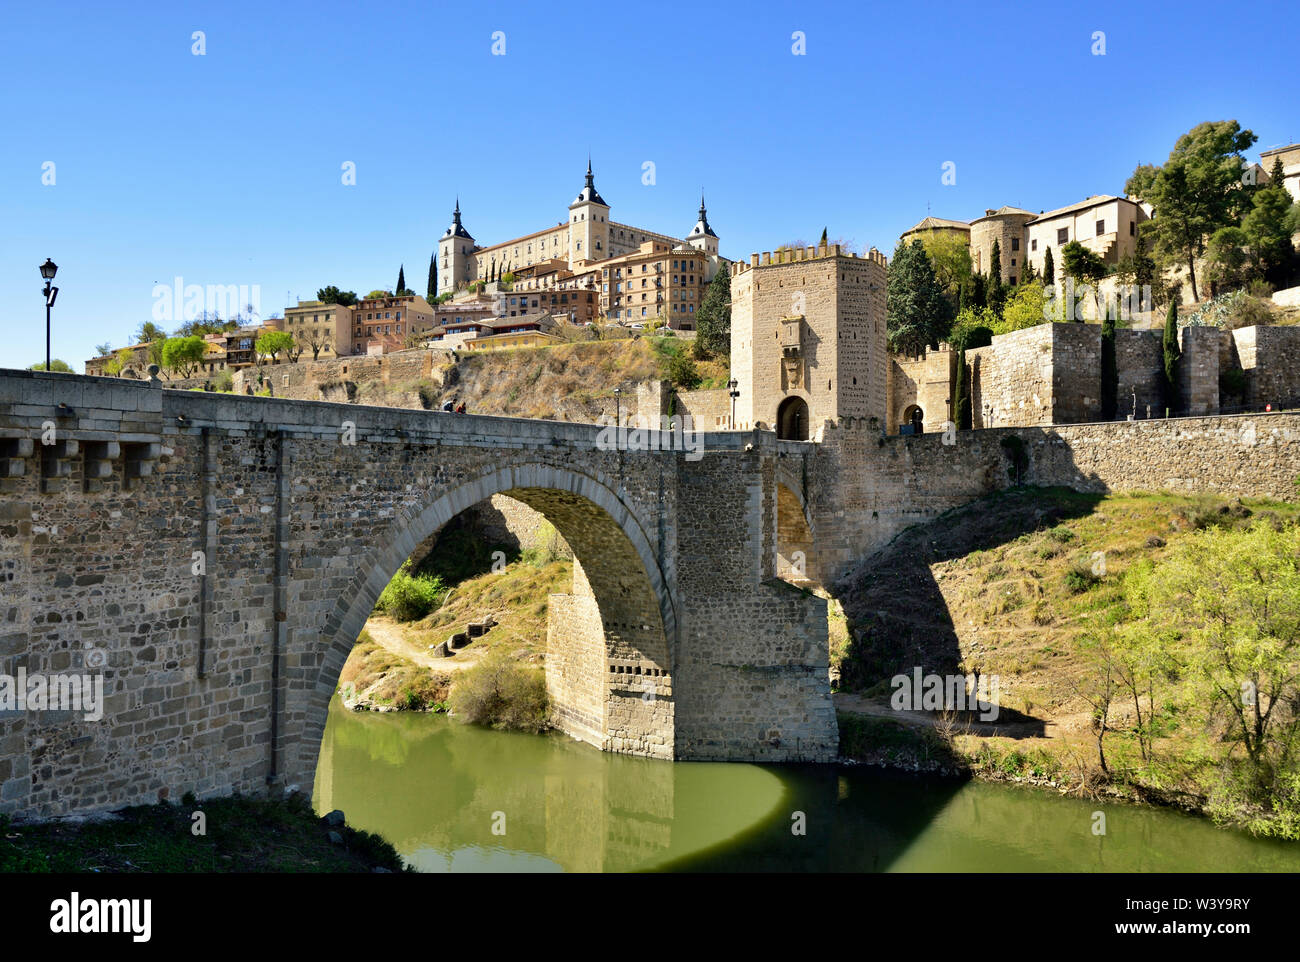 Le Puente de Alcantara Alcantara (pont) sur le fleuve Tage, un pont romain qui a été l'entrée obligatoire pour tous les pèlerins au Moyen Âge. Site du patrimoine mondial de l'Unesco, Tolède. Castille la Manche, Espagne Banque D'Images